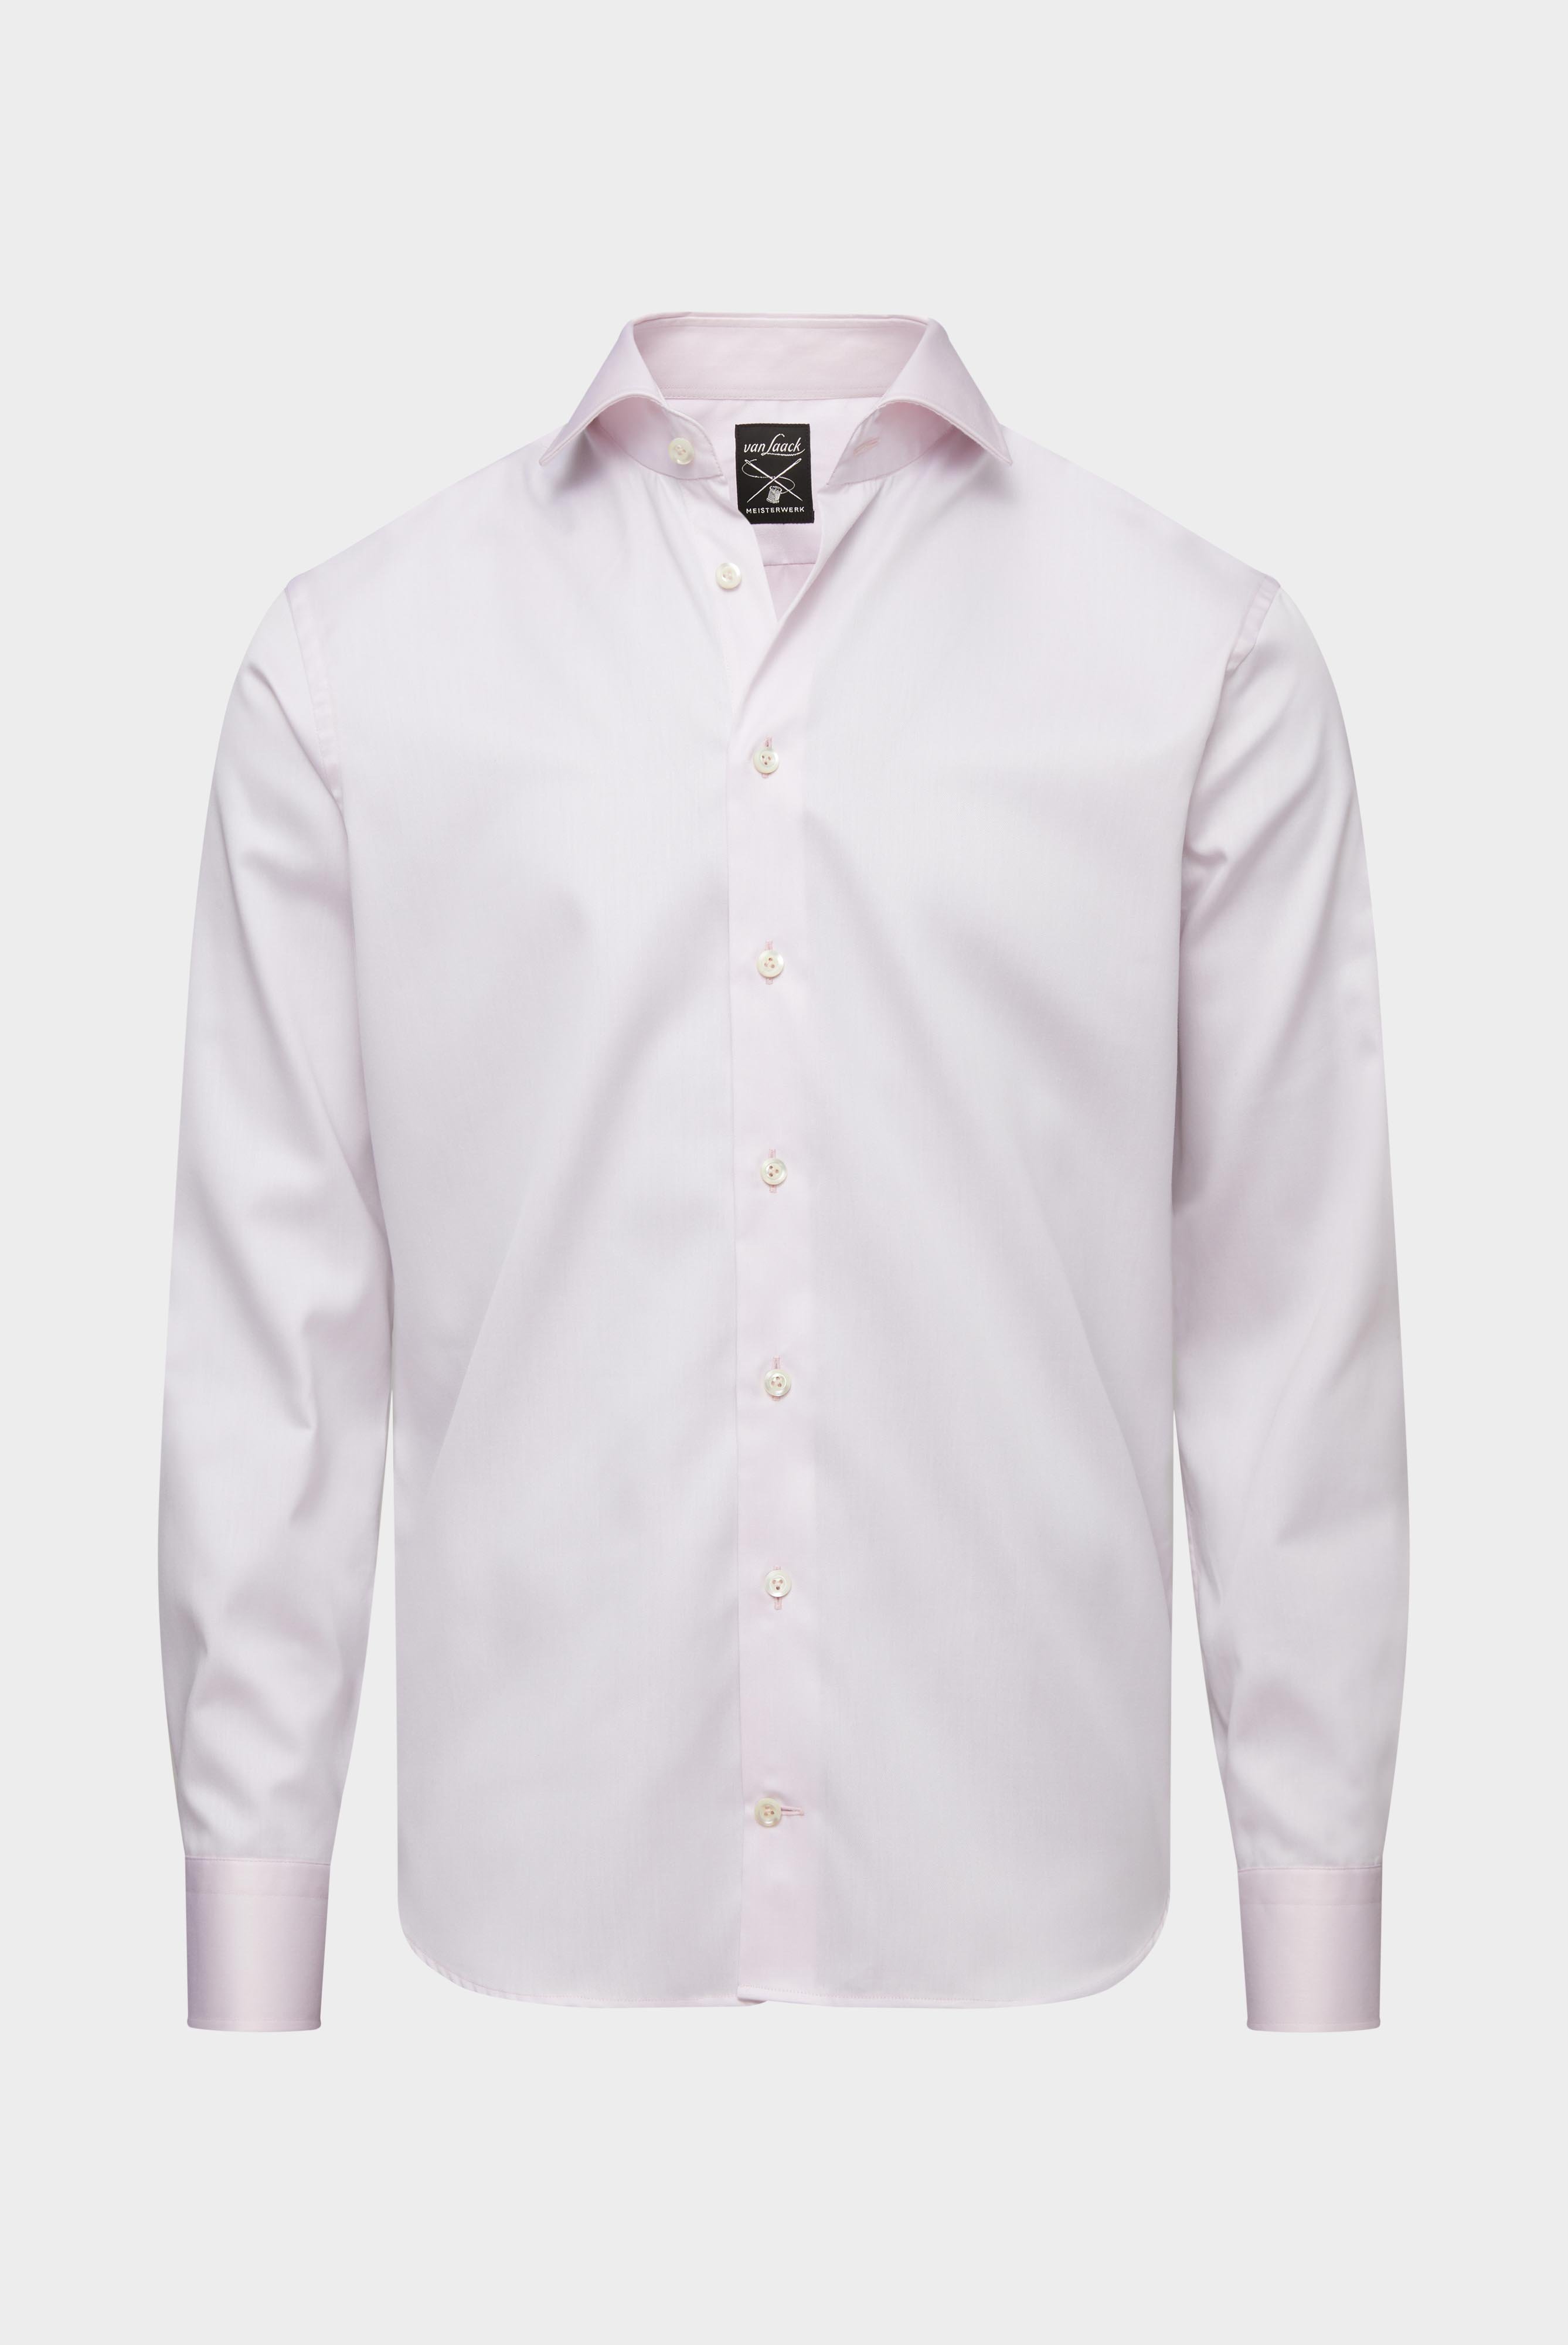 Bügelleichte Hemden+Bügelfreies Twill Hemd Slim Fit+20.2019.BQ.132241.510.37